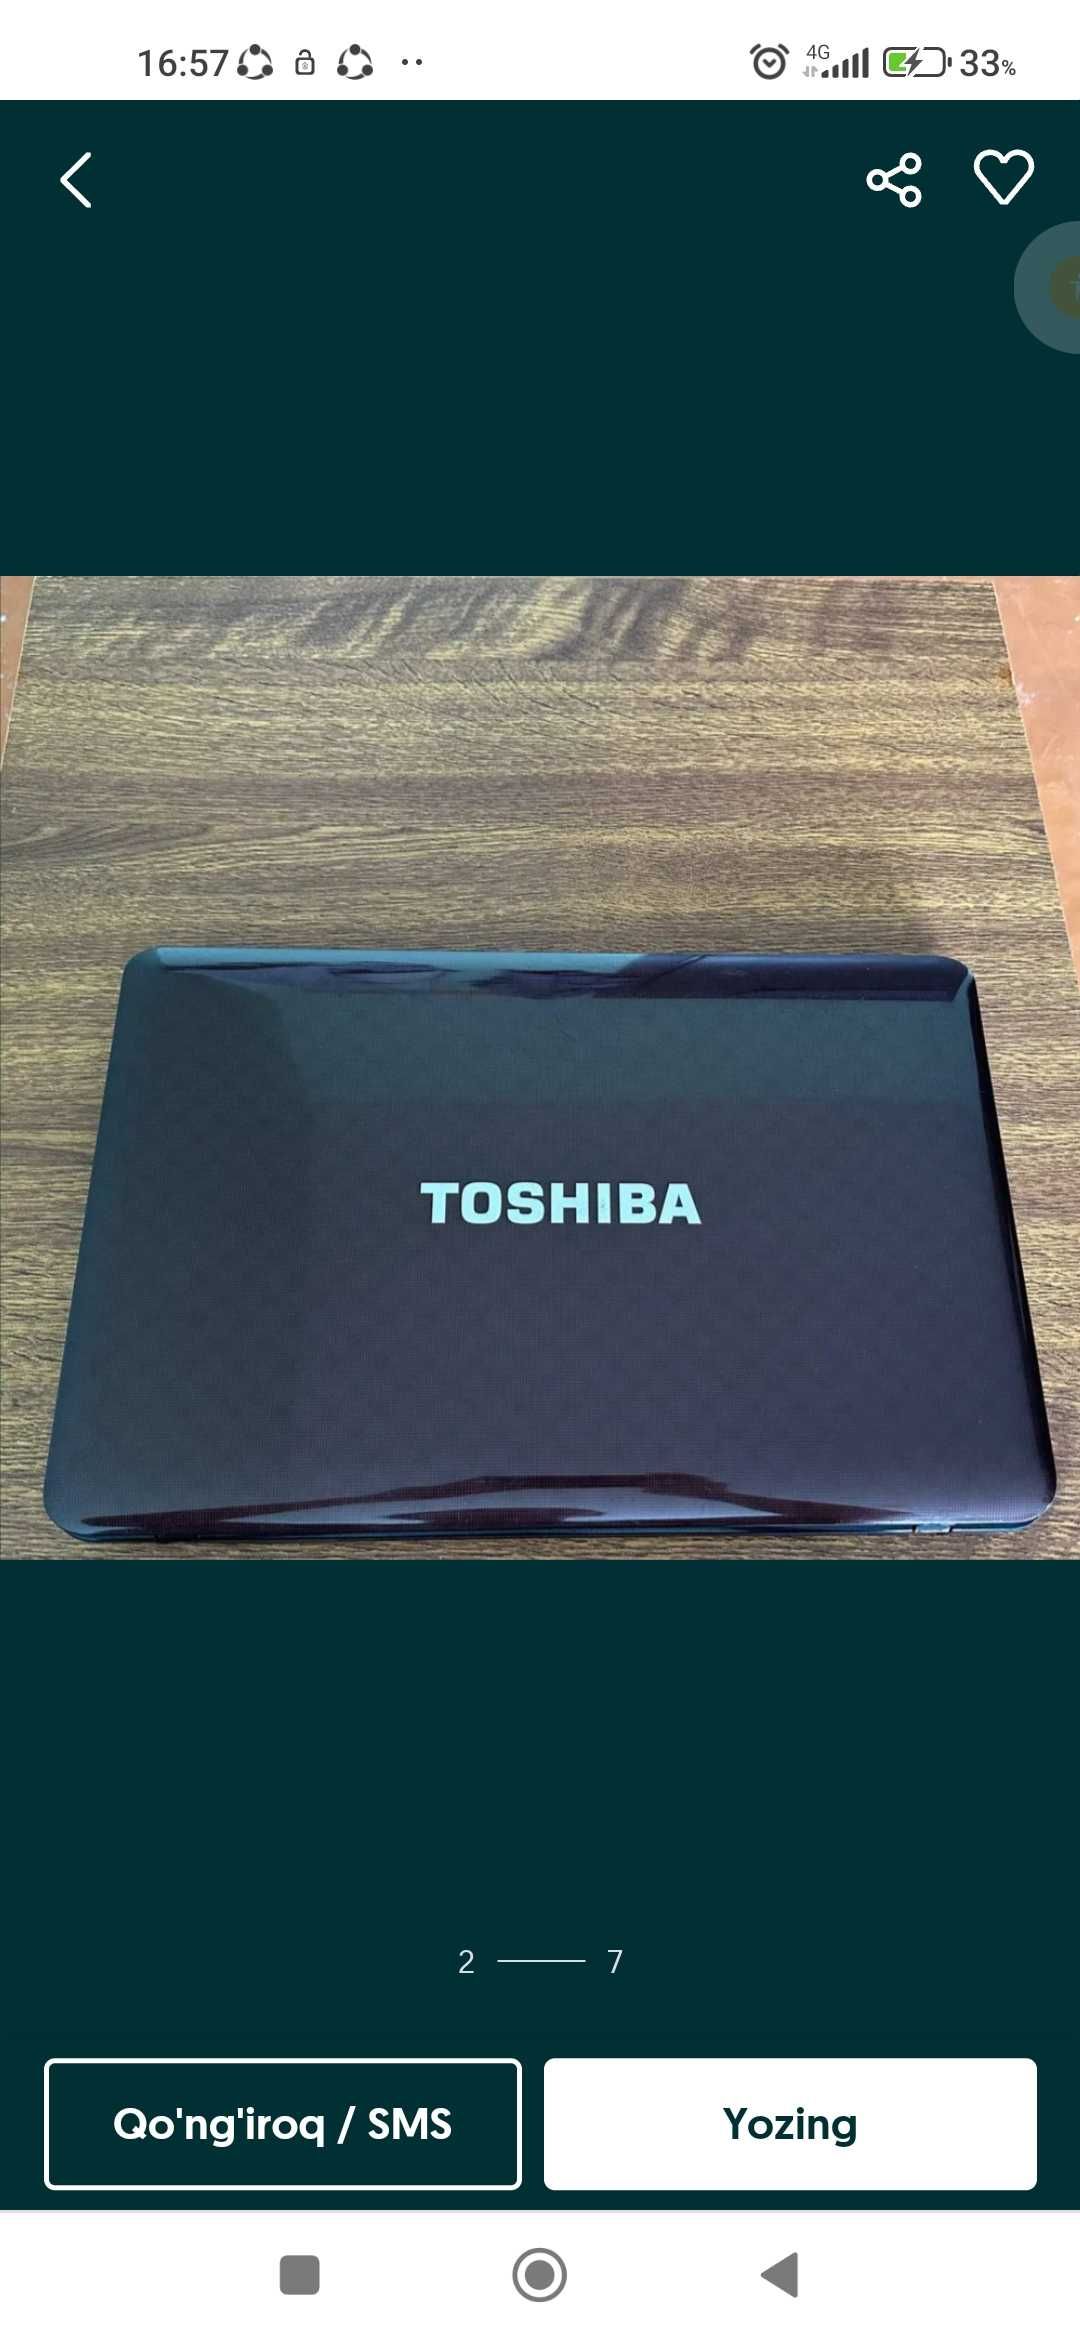 Toshiba offesniy